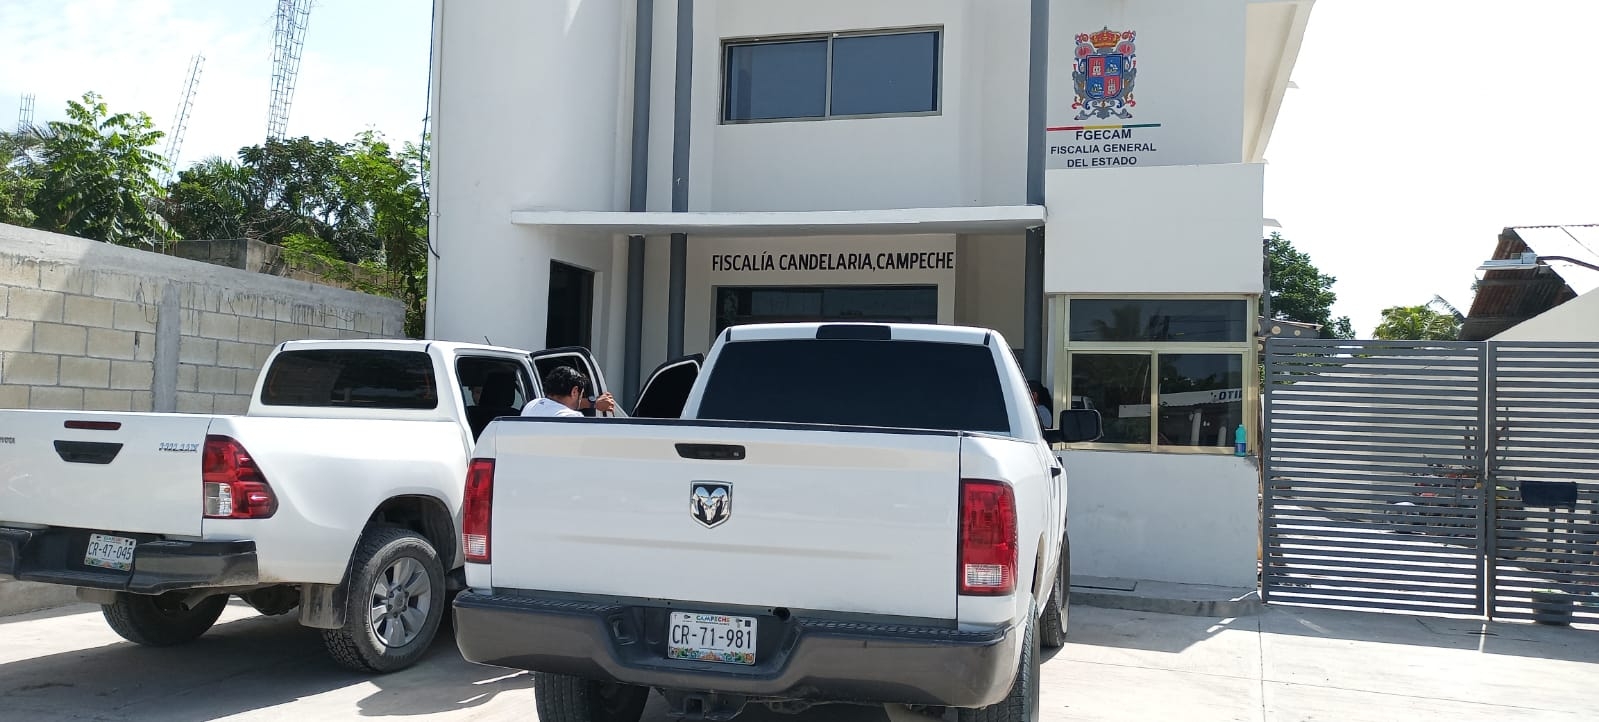 Matan a balazos a un ganadero y a dos acompañantes en Candelaria, Campeche